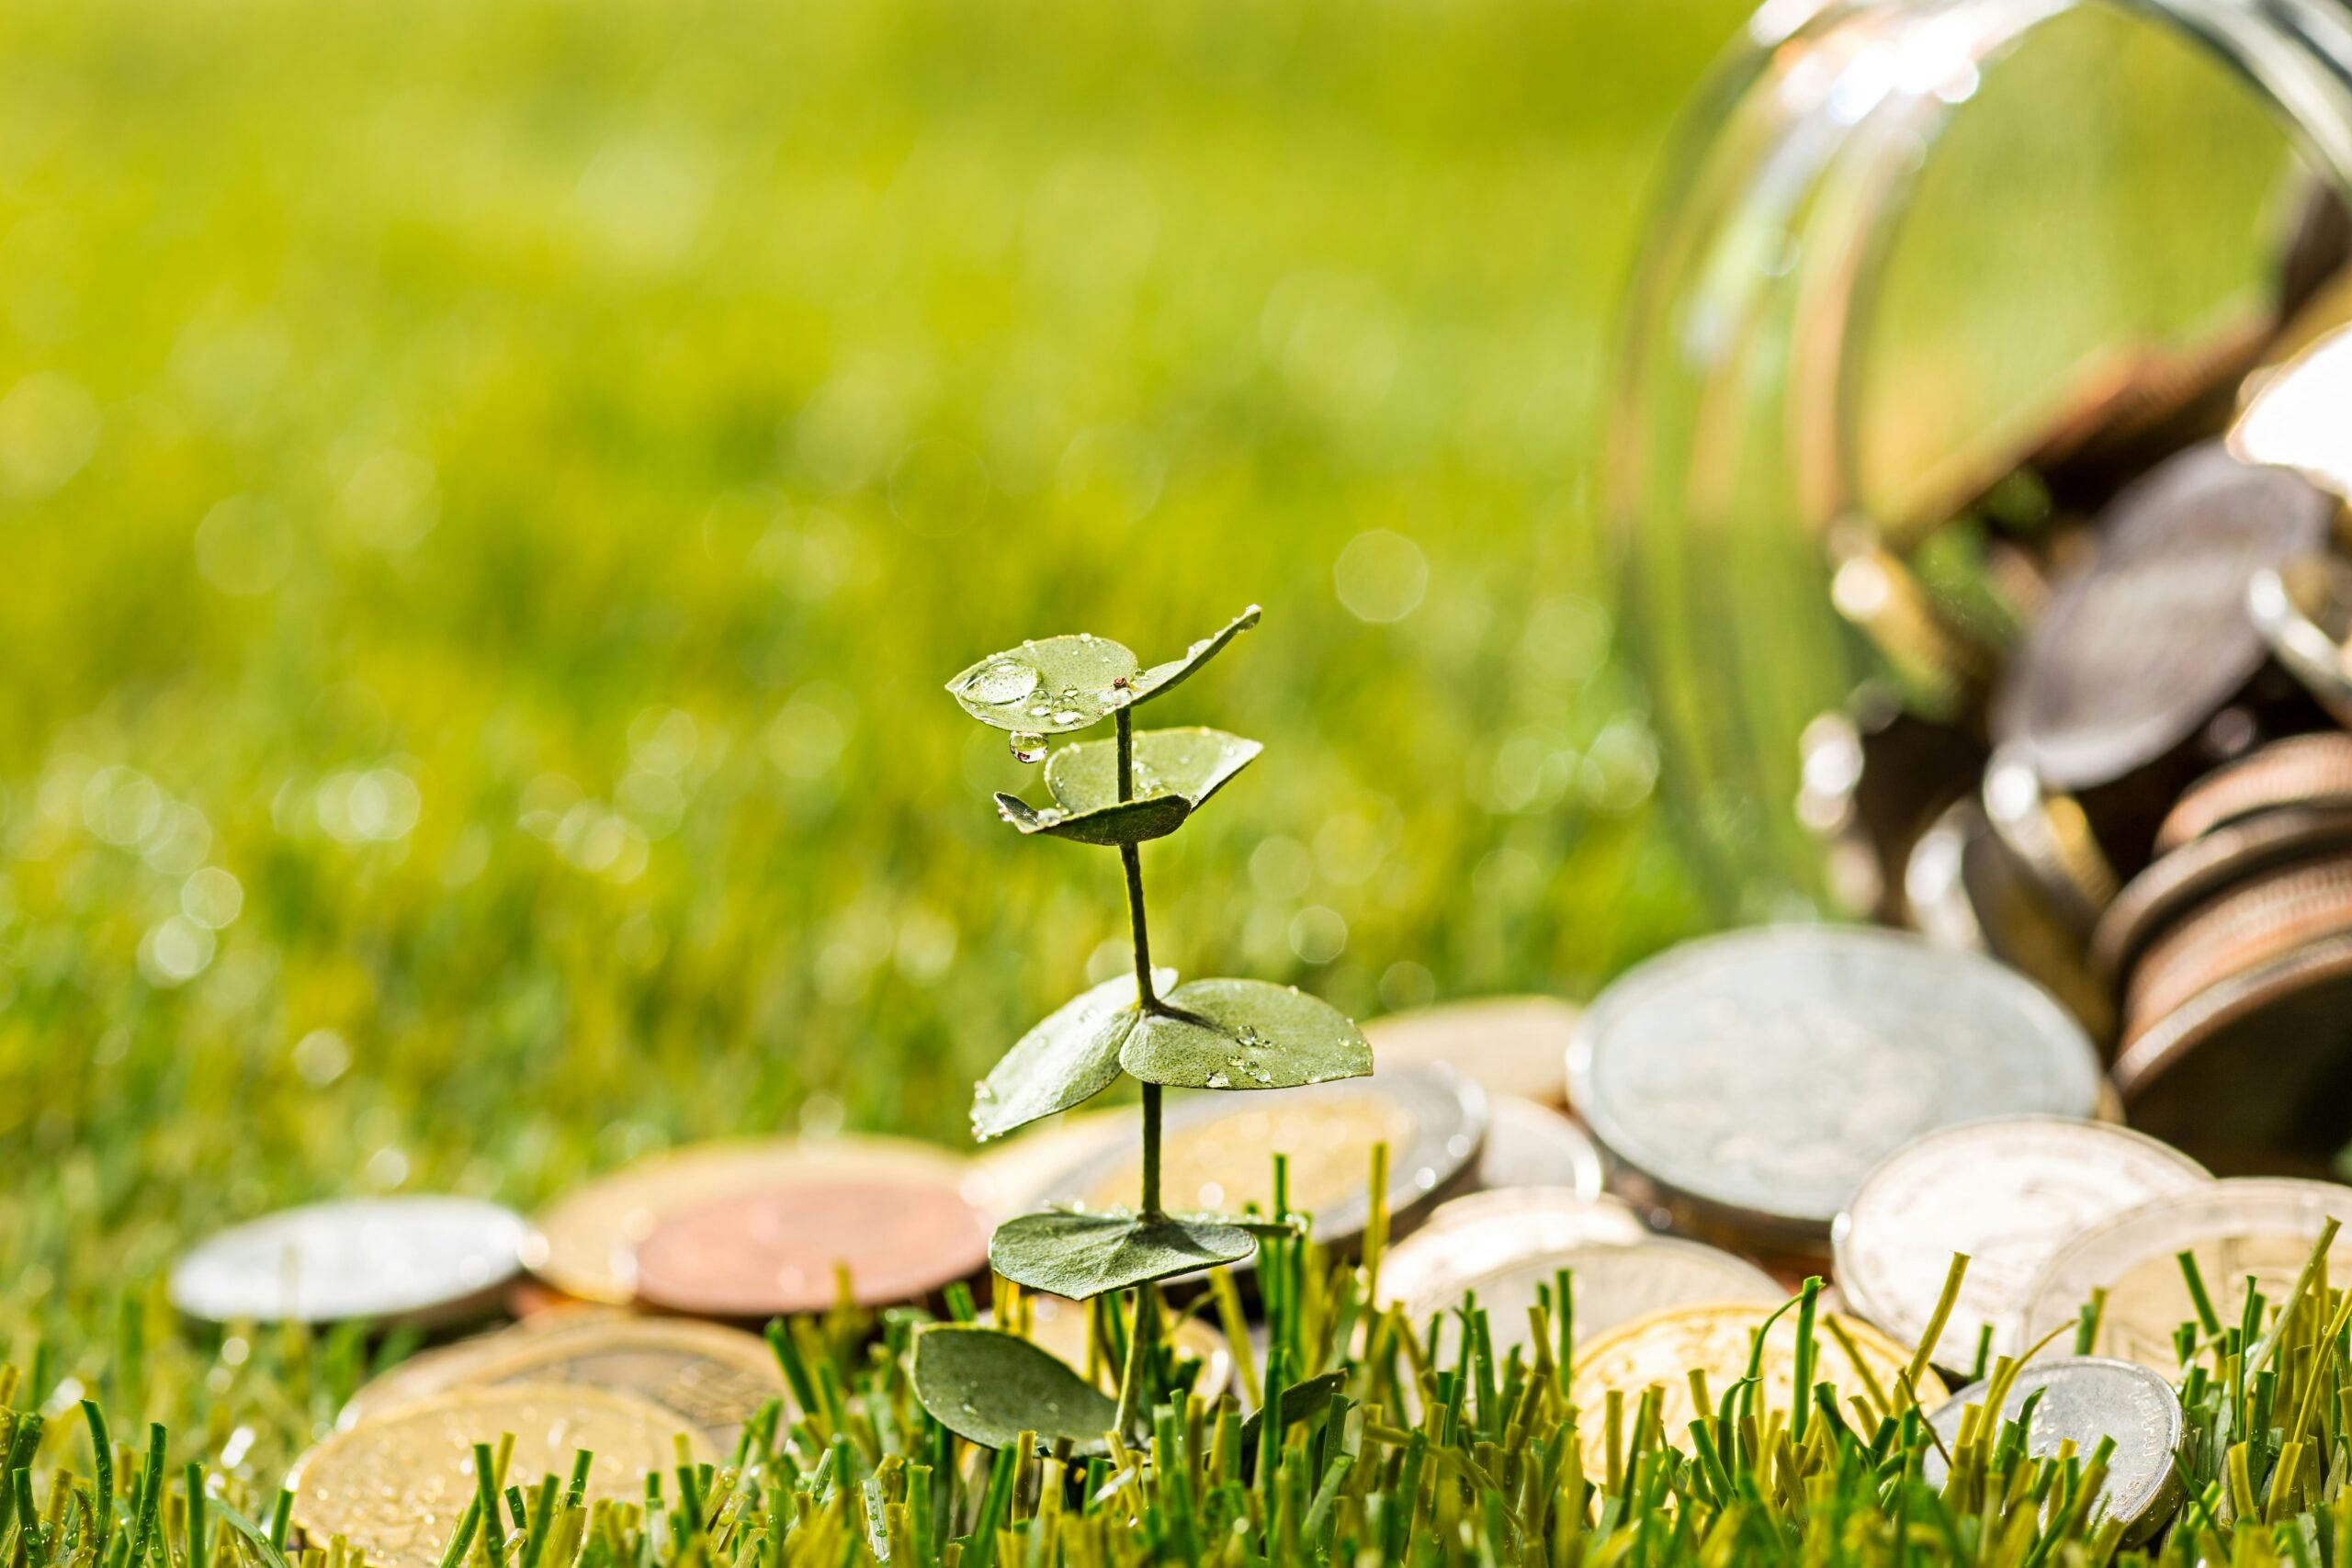 Sustentabilidade Financeira E Empréstimos Sem Garantia — Como Alcançar o Equilíbrio?